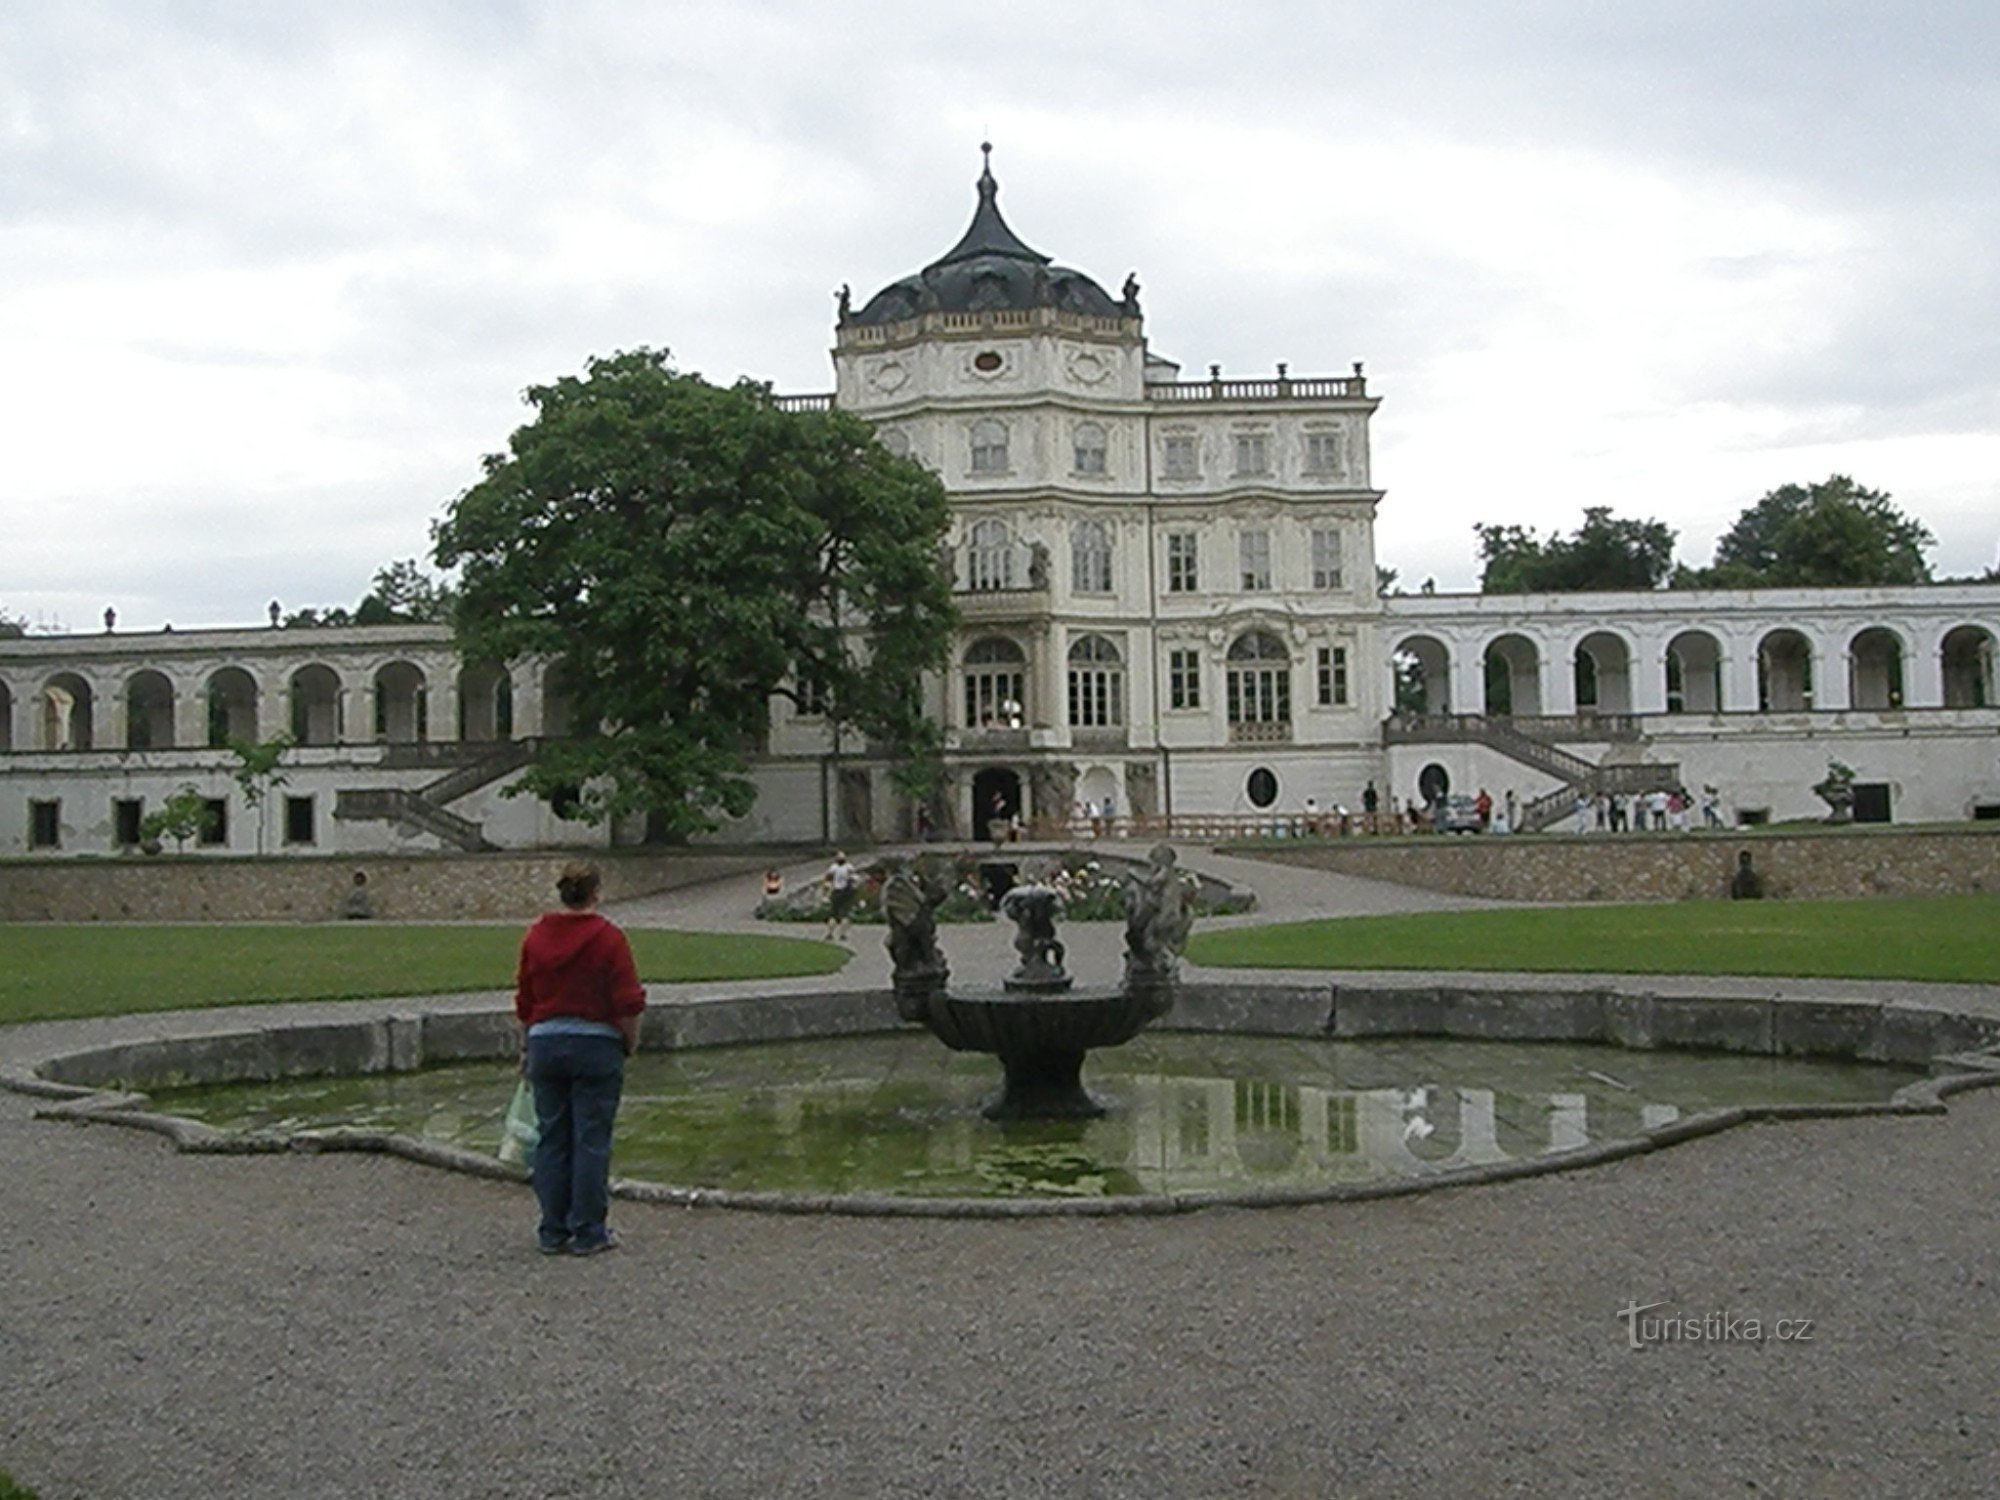 Paikallinen barokkilinna uima-altaineen ja lampineen muistuttaa ehkä hieman pientä Versaillesia